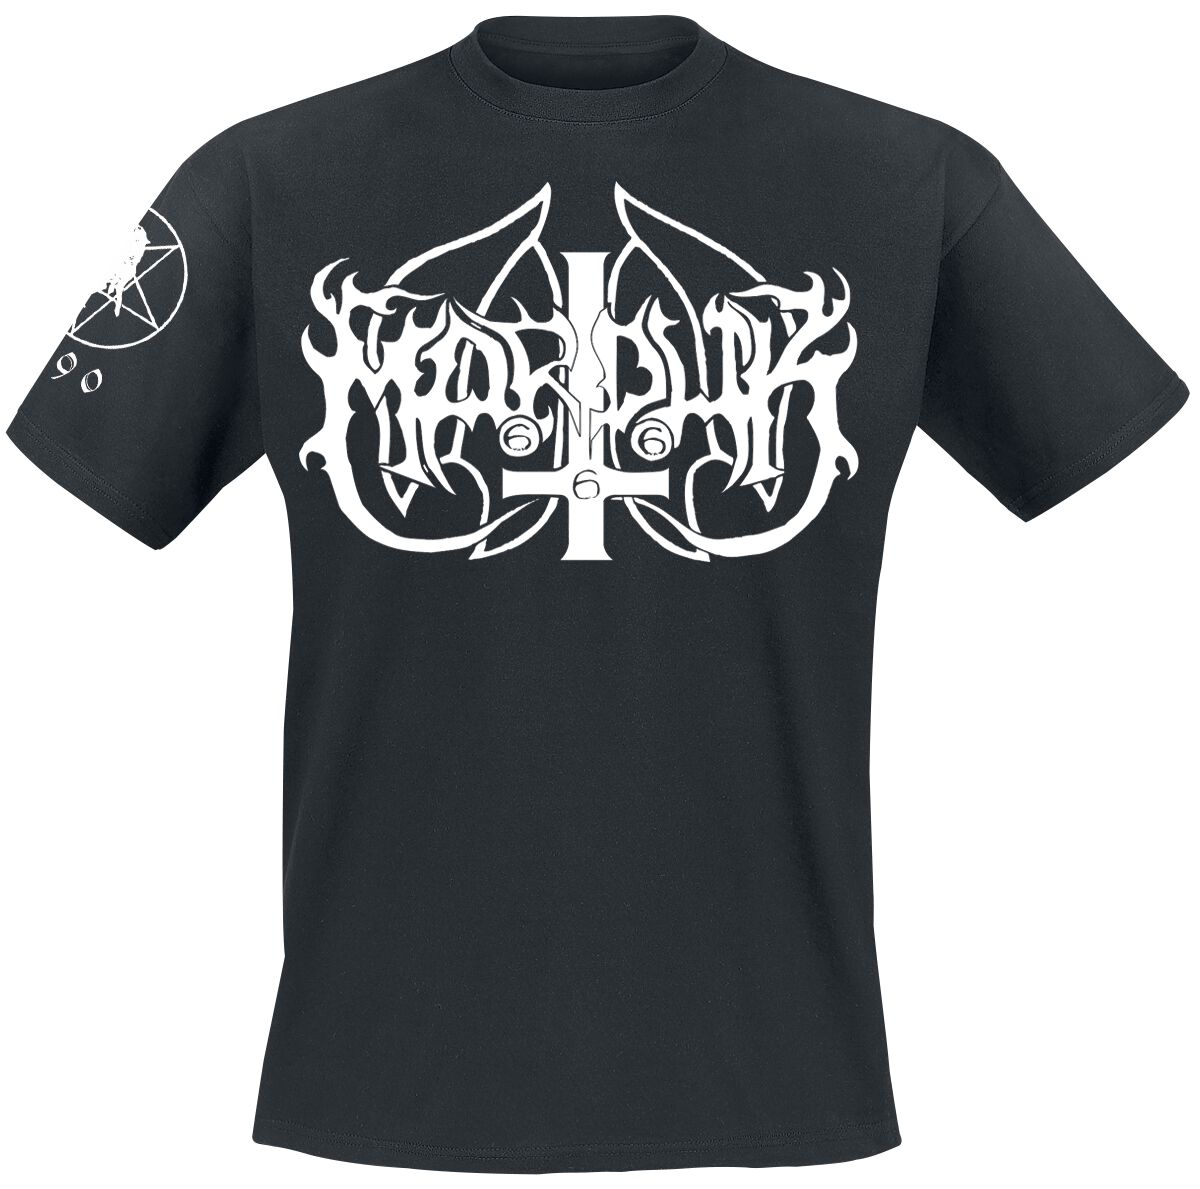 marduk t-shirt - legion - m bis xxl - fÃ¼r mÃ¤nner - grÃ¶ÃŸe xxl - - lizenziertes merchandise! schwarz